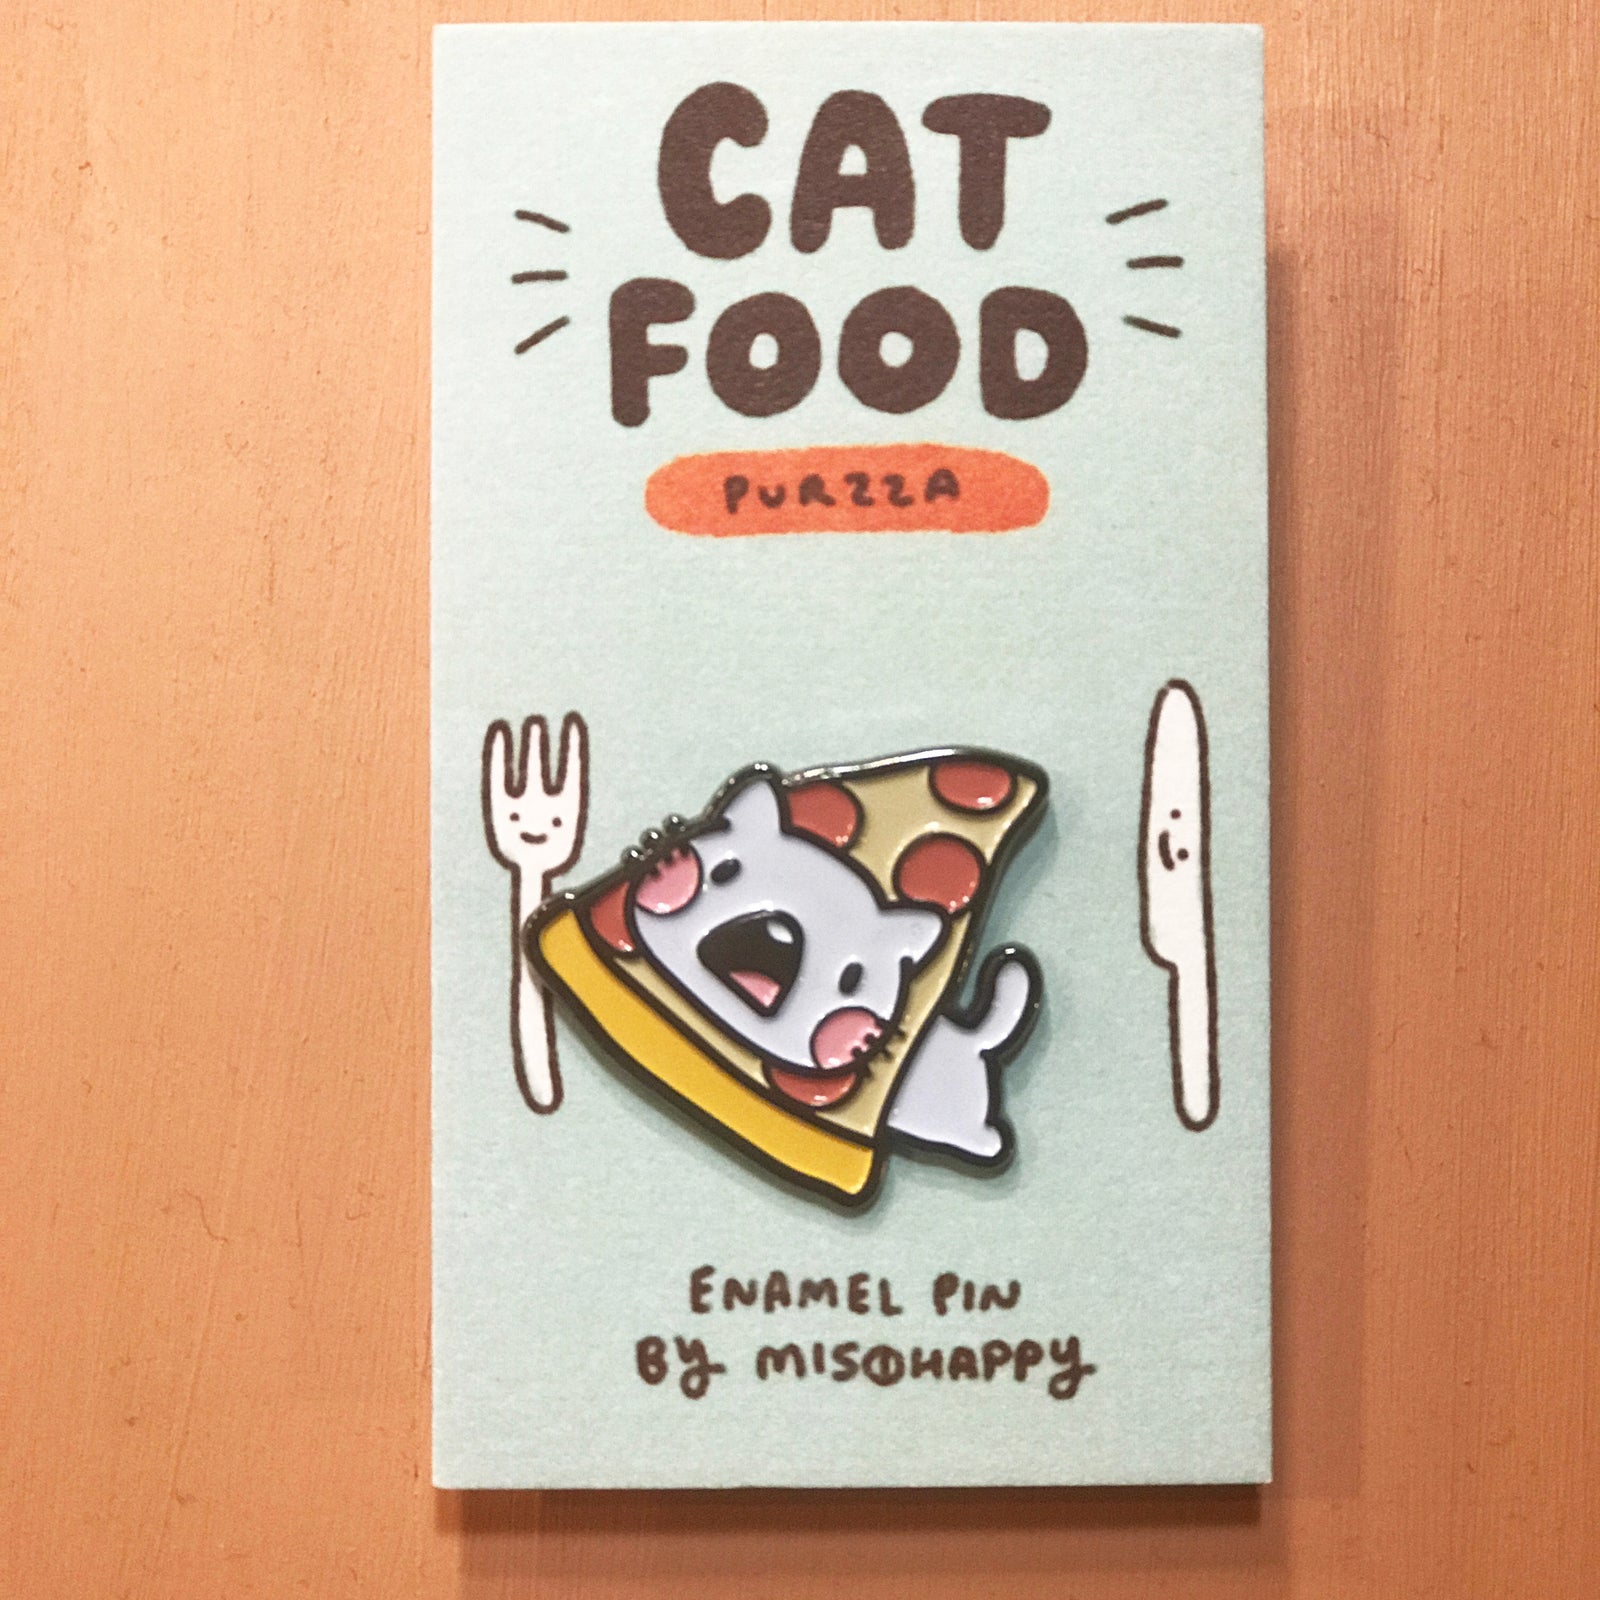 Enamel Pin: Cat Food - Pizza - Pin